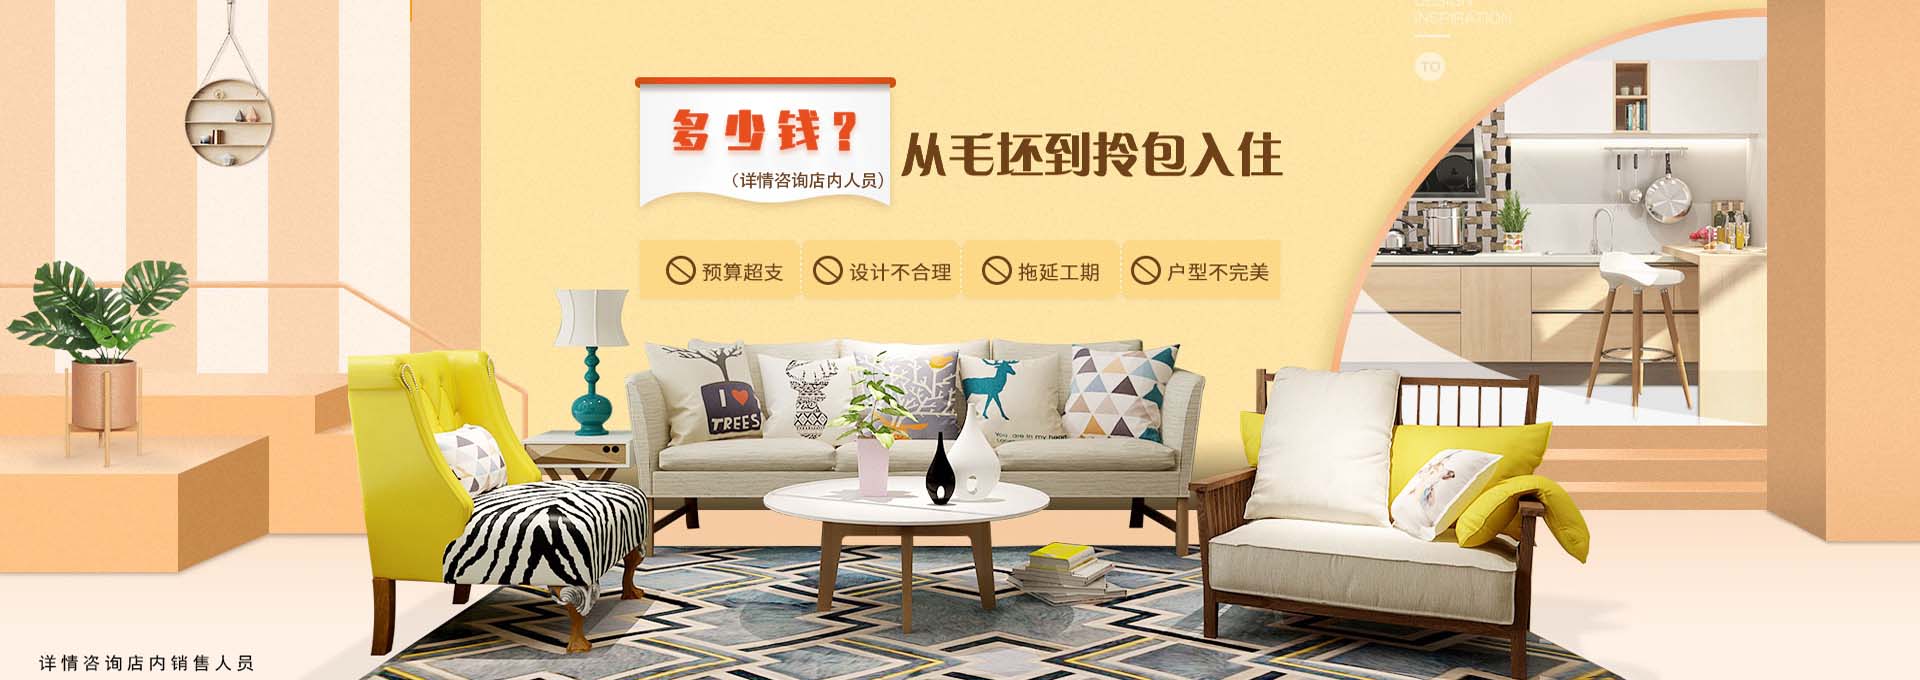 关于当前产品betapp·(中国)官方网站的成功案例等相关图片